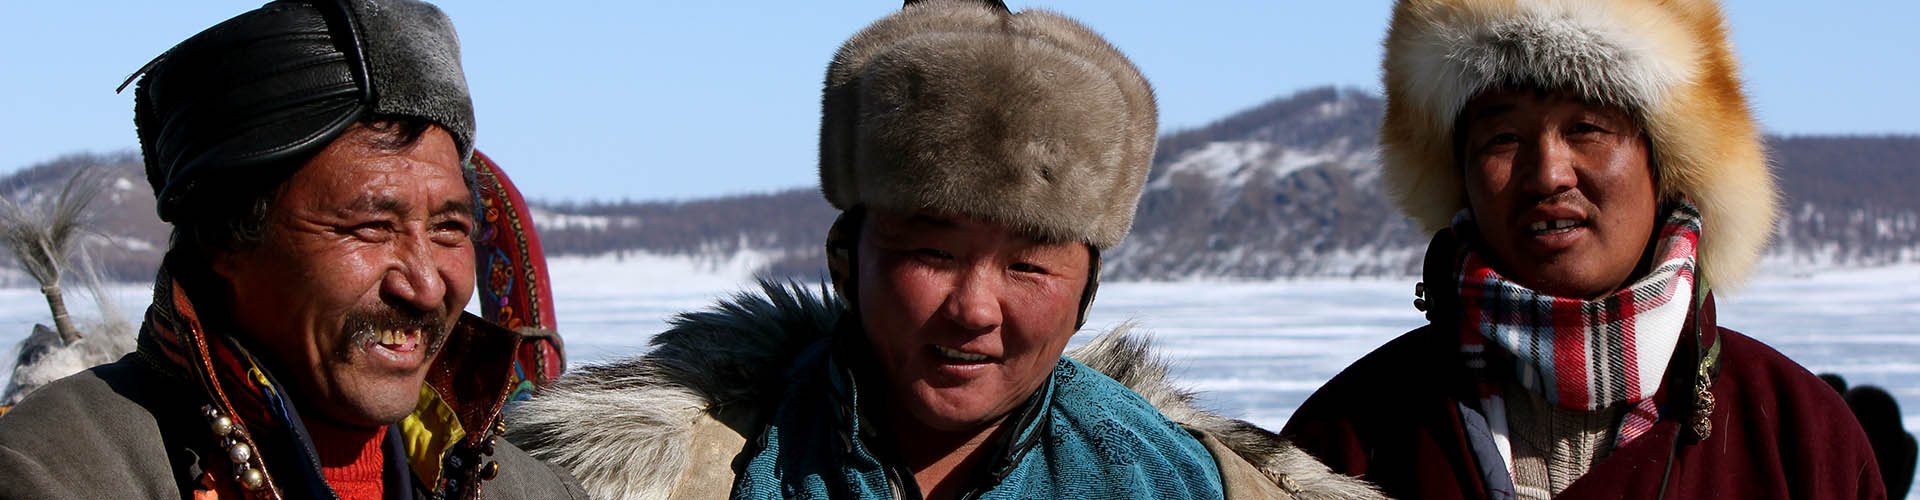 mongolian clothing for men